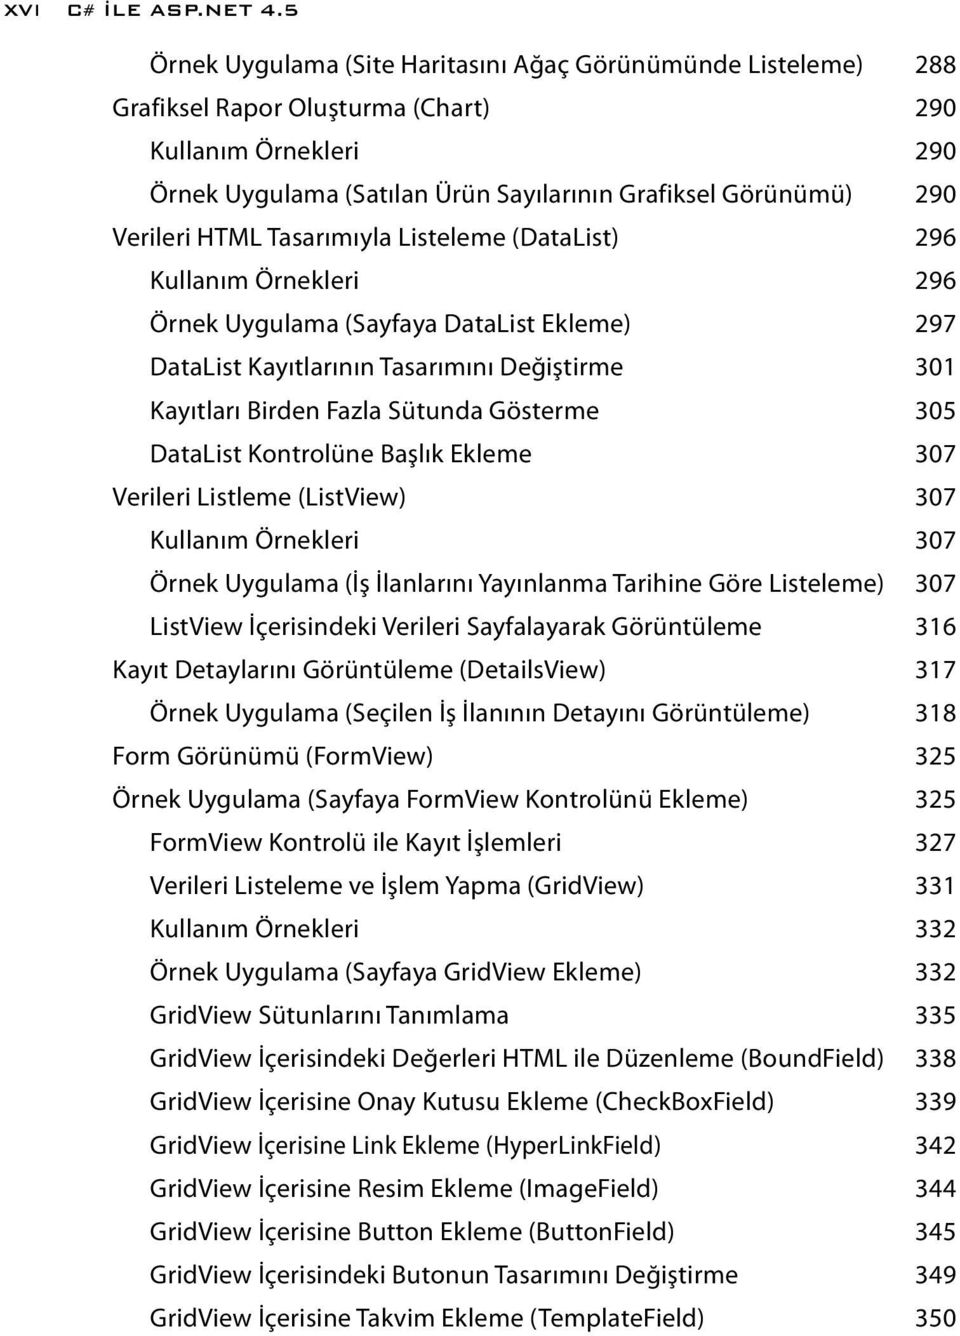 Verileri HTML Tasarımıyla Listeleme (DataList) 296 Kullanım Örnekleri 296 Örnek Uygulama (Sayfaya DataList Ekleme) 297 DataList Kayıtlarının Tasarımını Değiştirme 301 Kayıtları Birden Fazla Sütunda